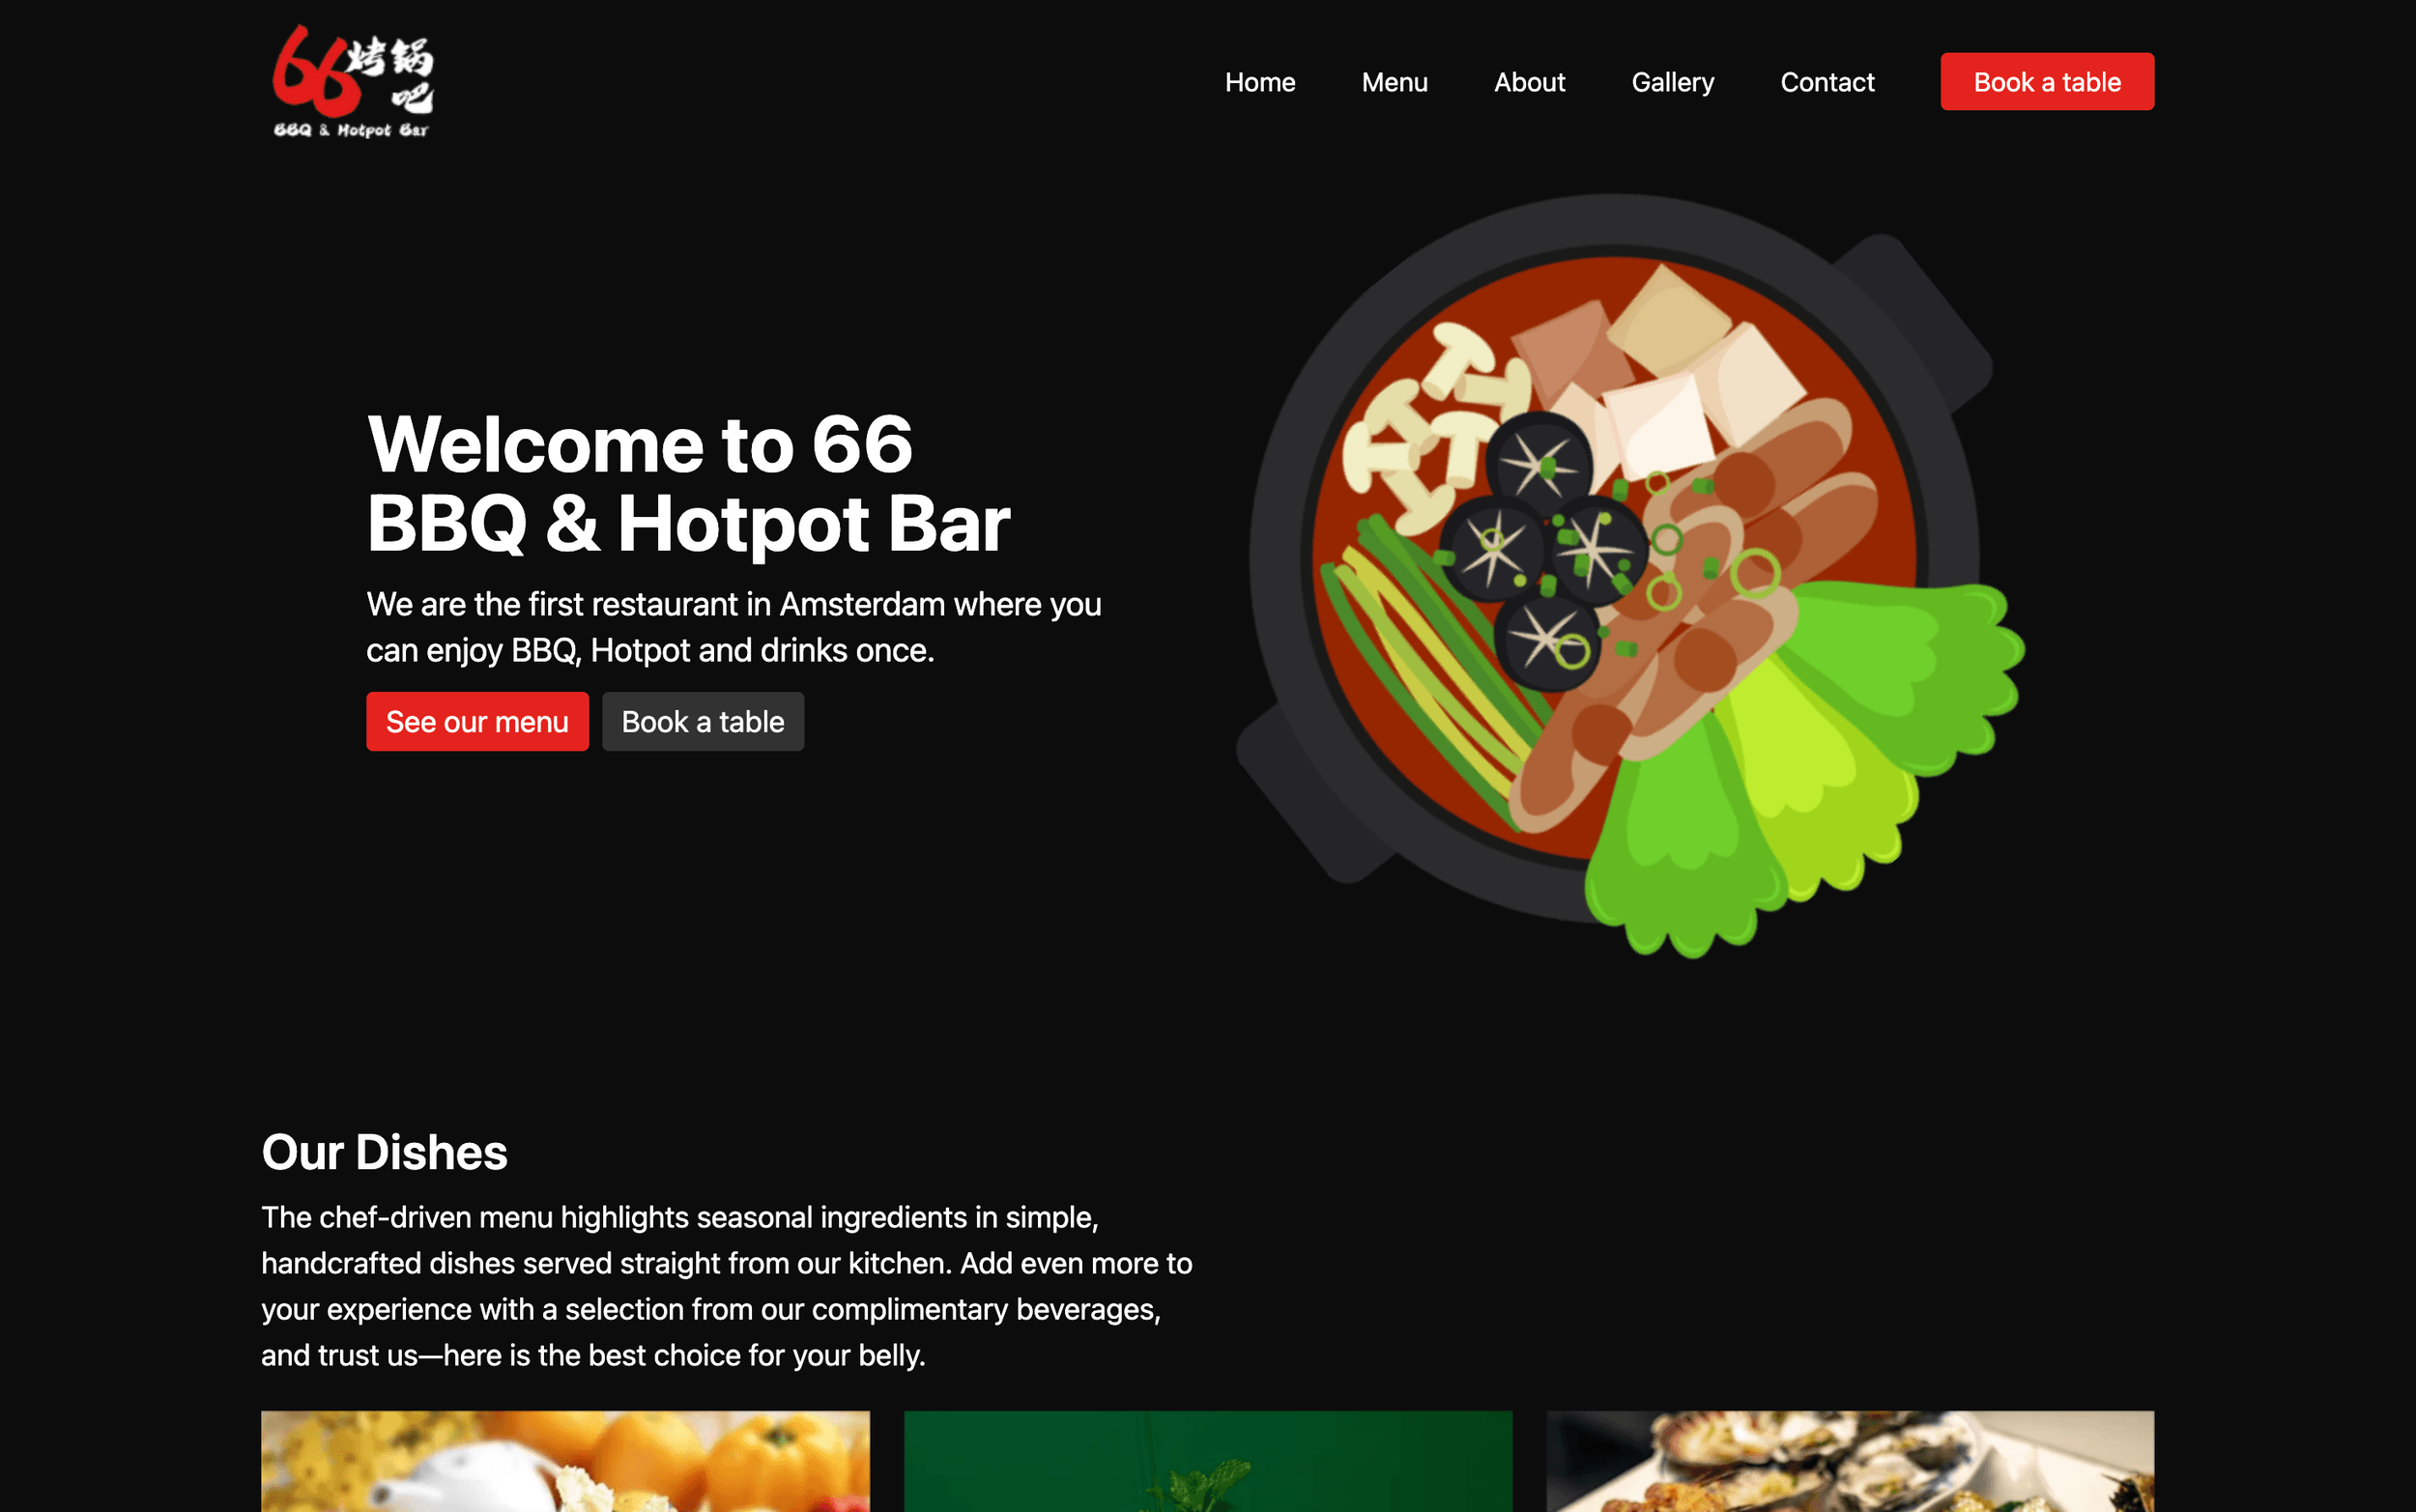 66 BBQ & Hotpot Bar